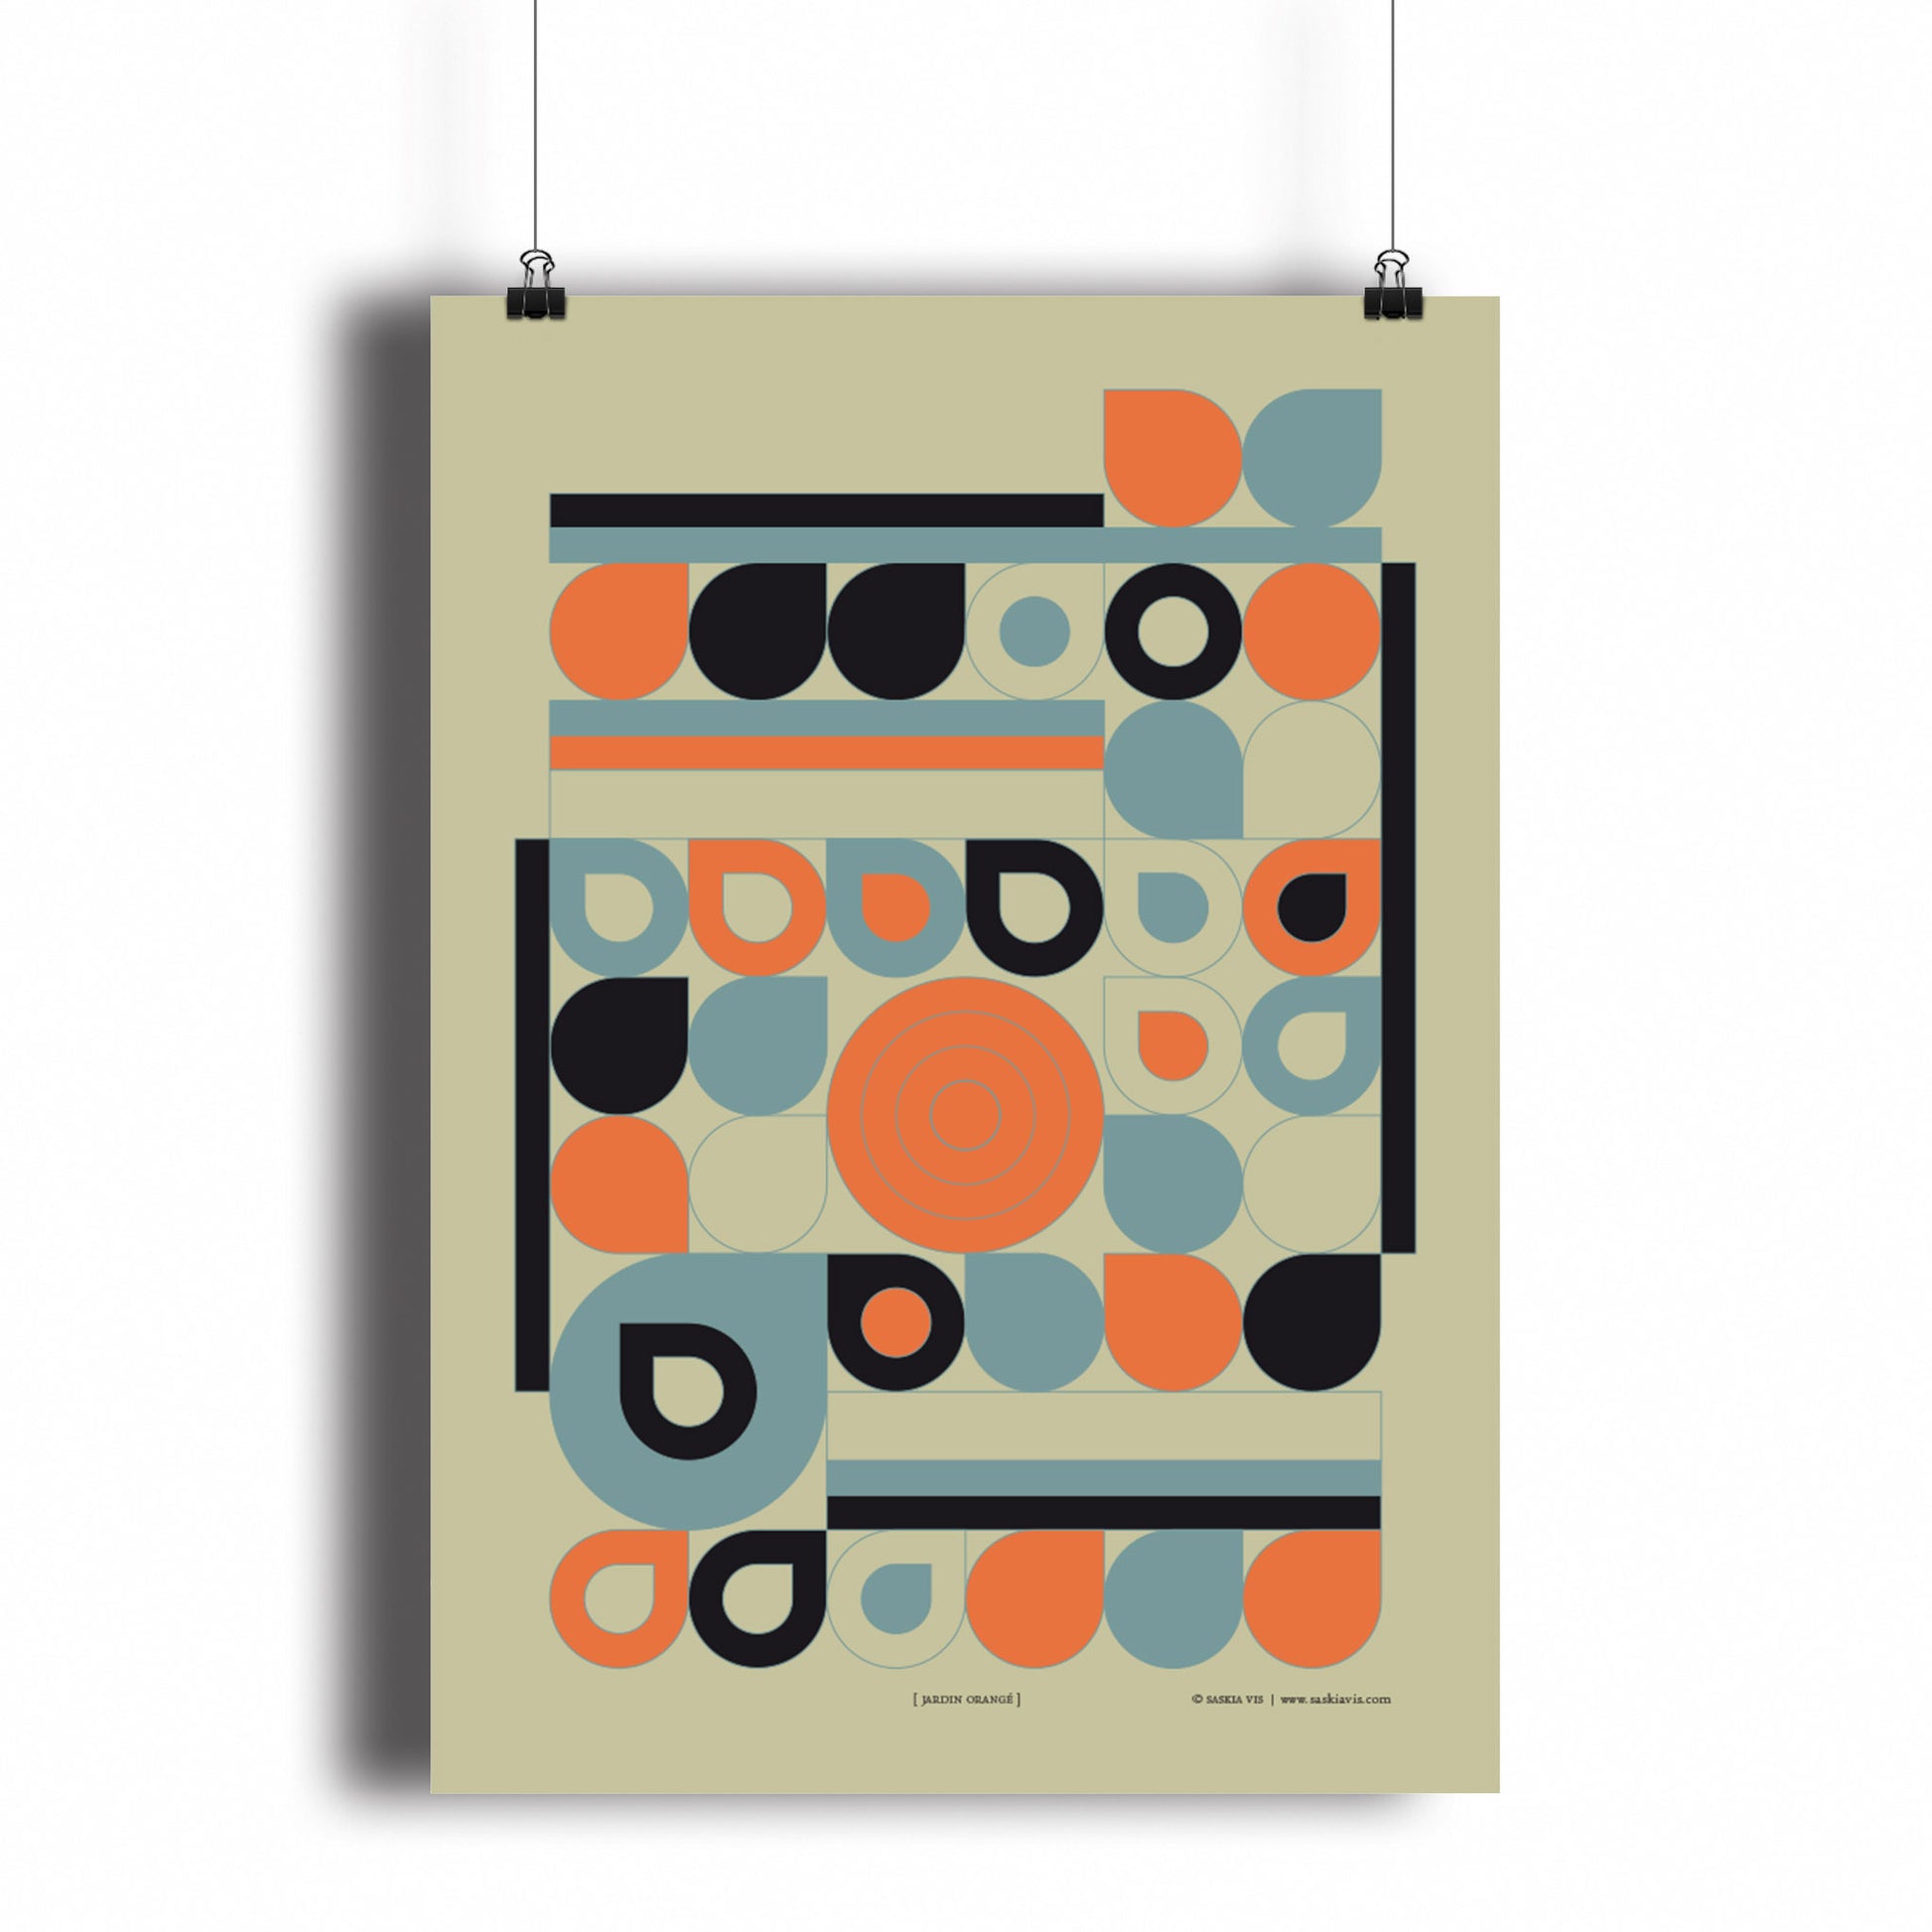 Productafbeelding, poster "jardin orange", hangend aan een witte wand, een overzichtsfoto